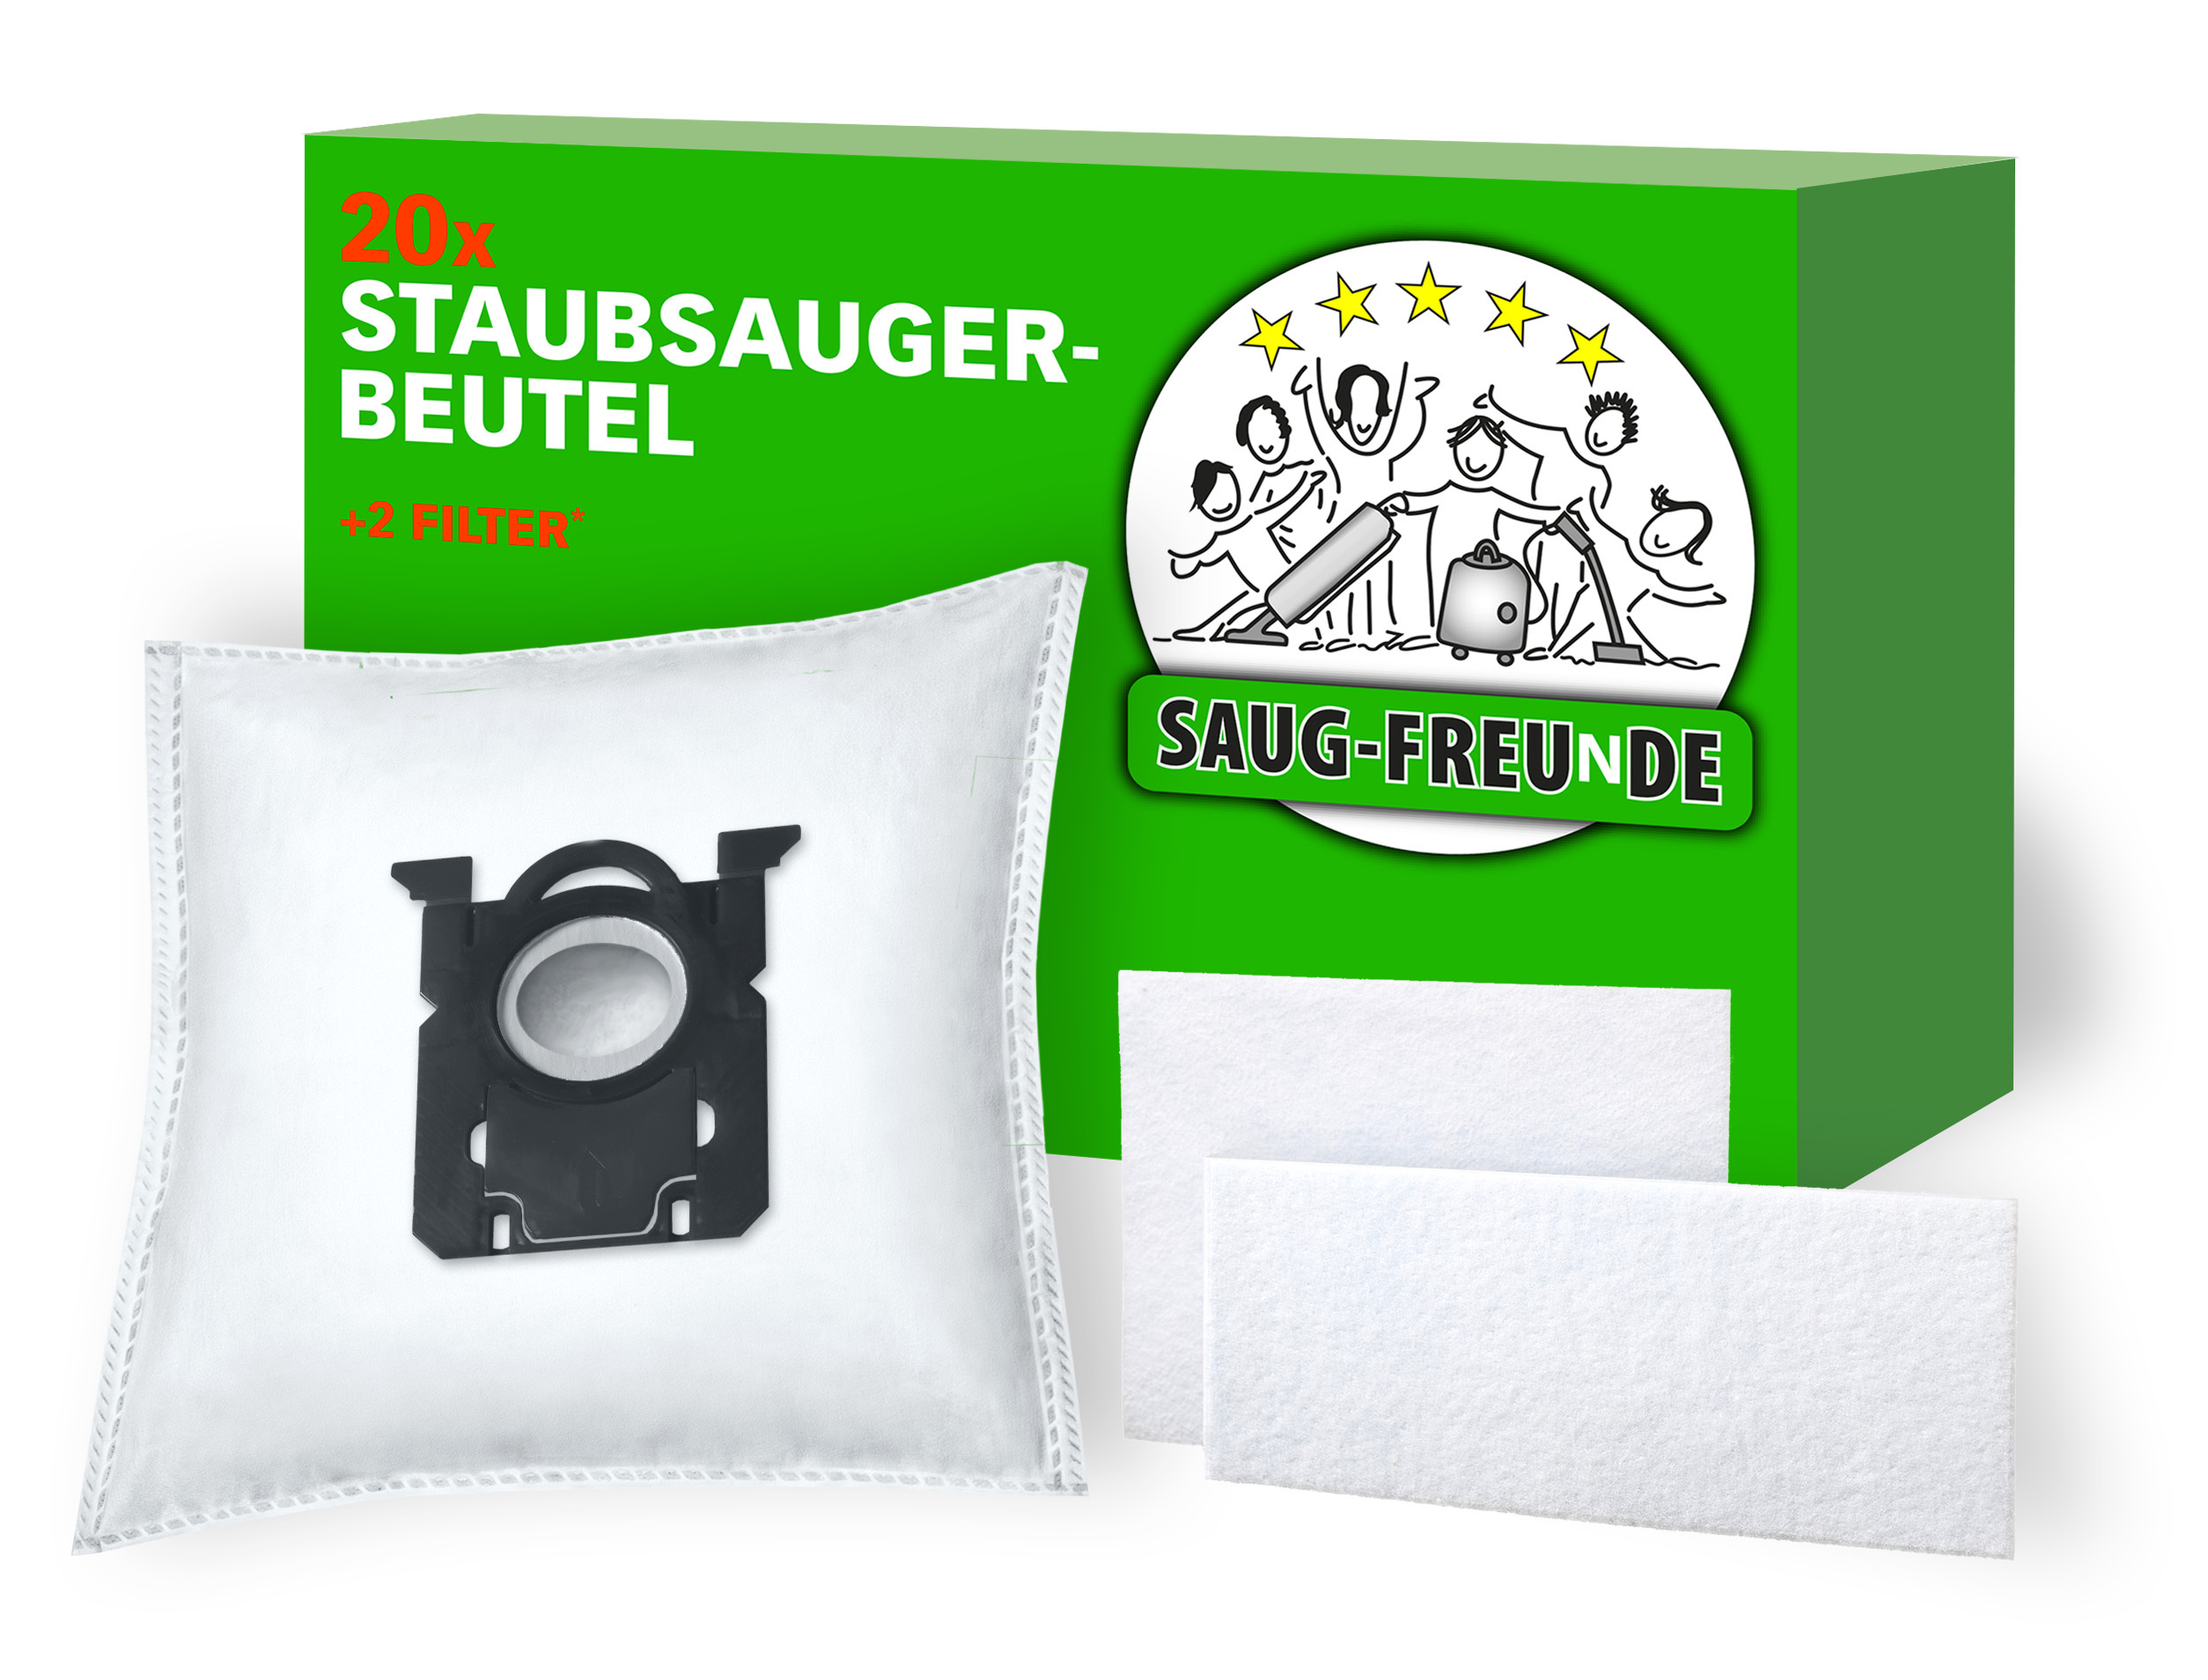 10x Staubsauger-Beutel SAUG-FREUNDE